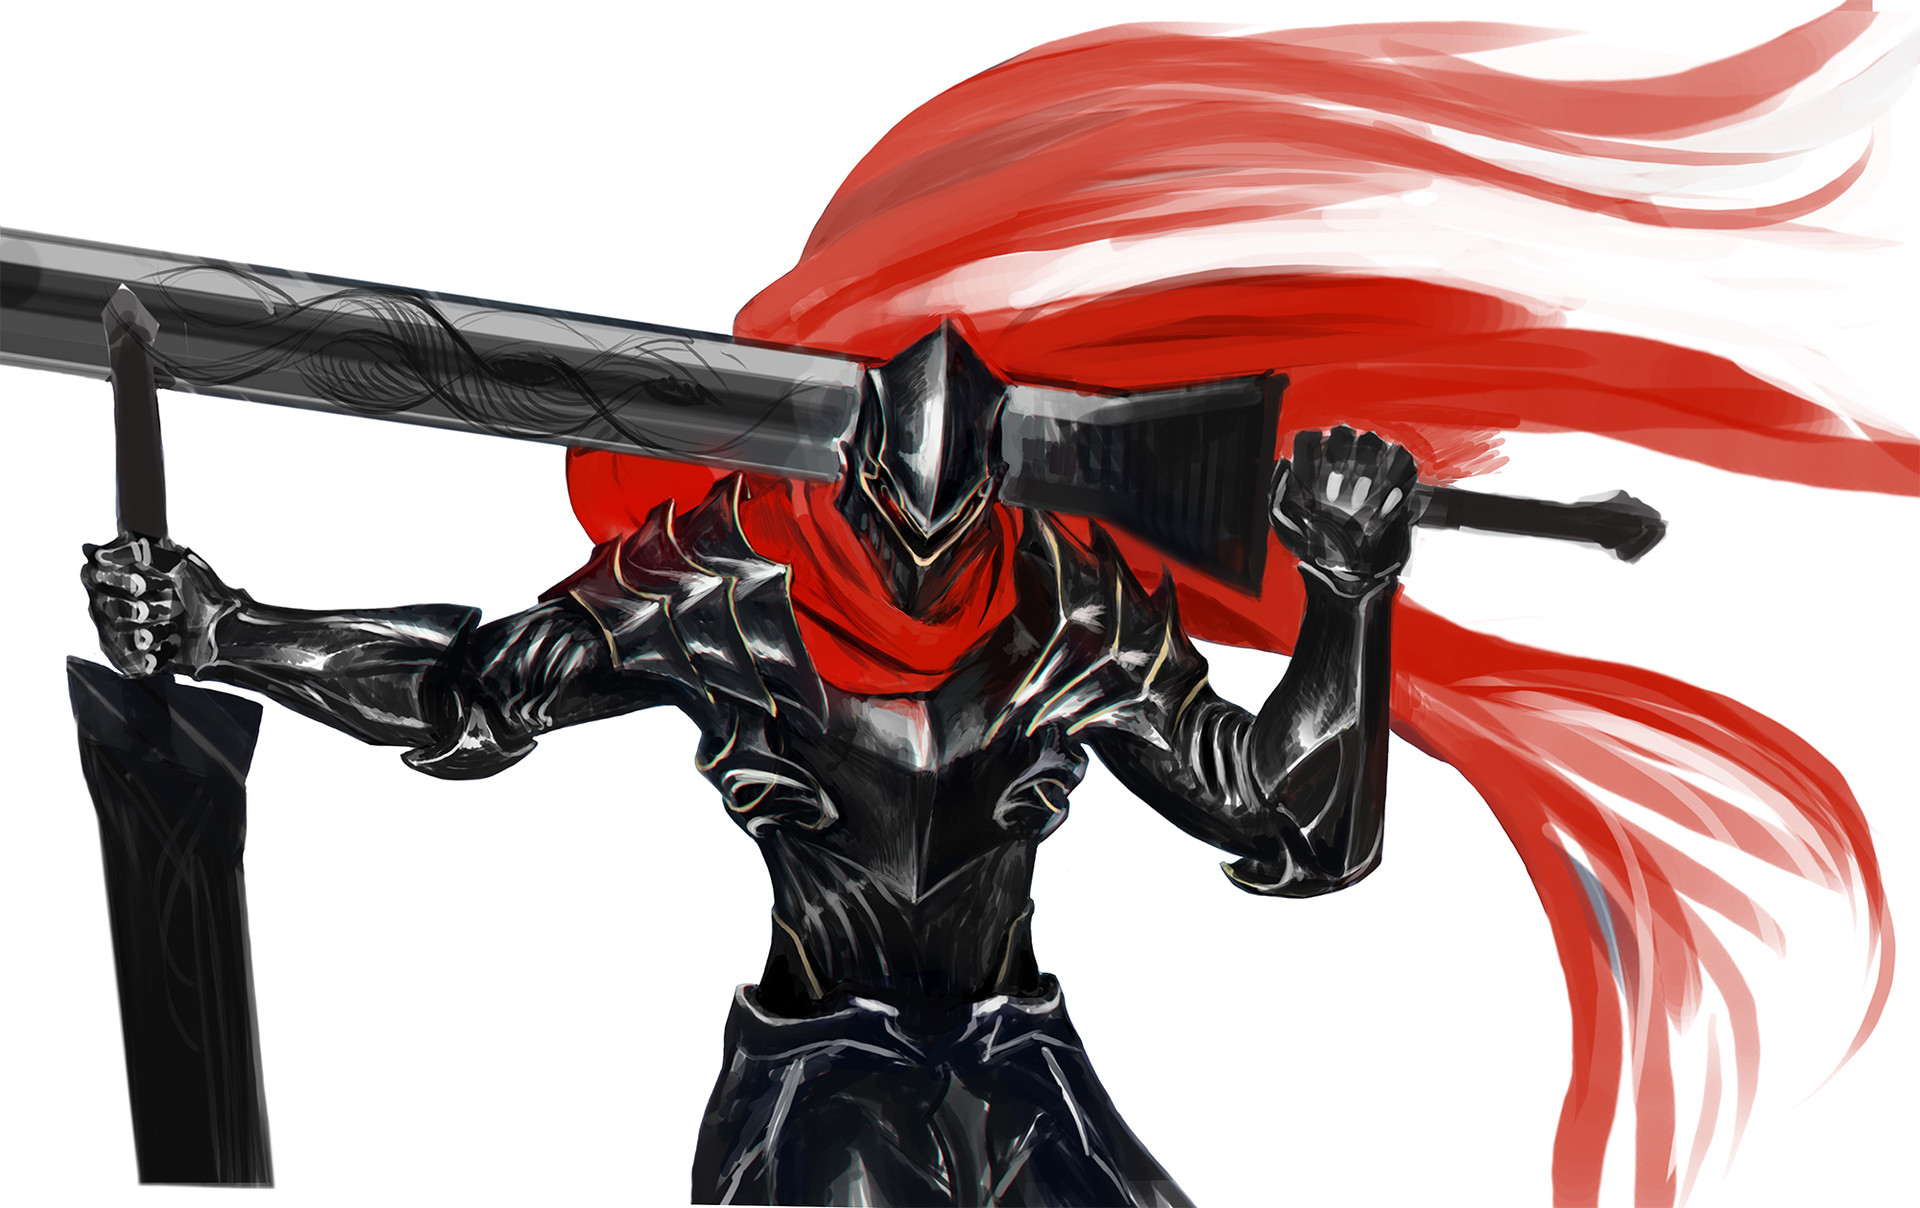 Fate: Momon, The Dark Warrior (Overlord Anime), Shirojime's Fanon World  Wiki